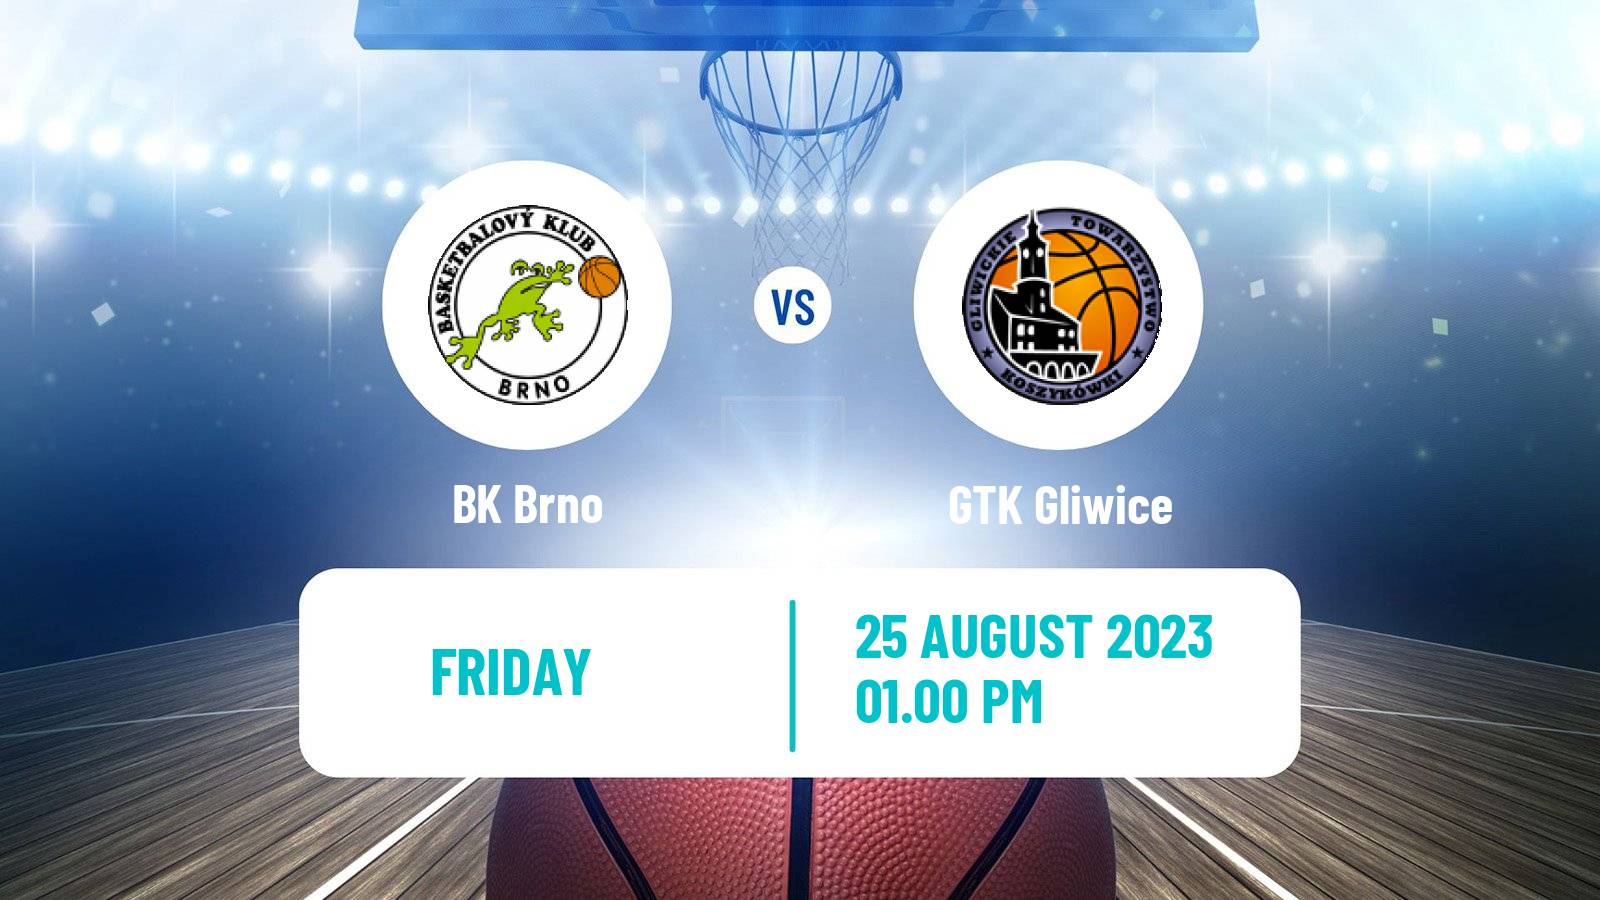 Basketball Club Friendly Basketball Brno - GTK Gliwice